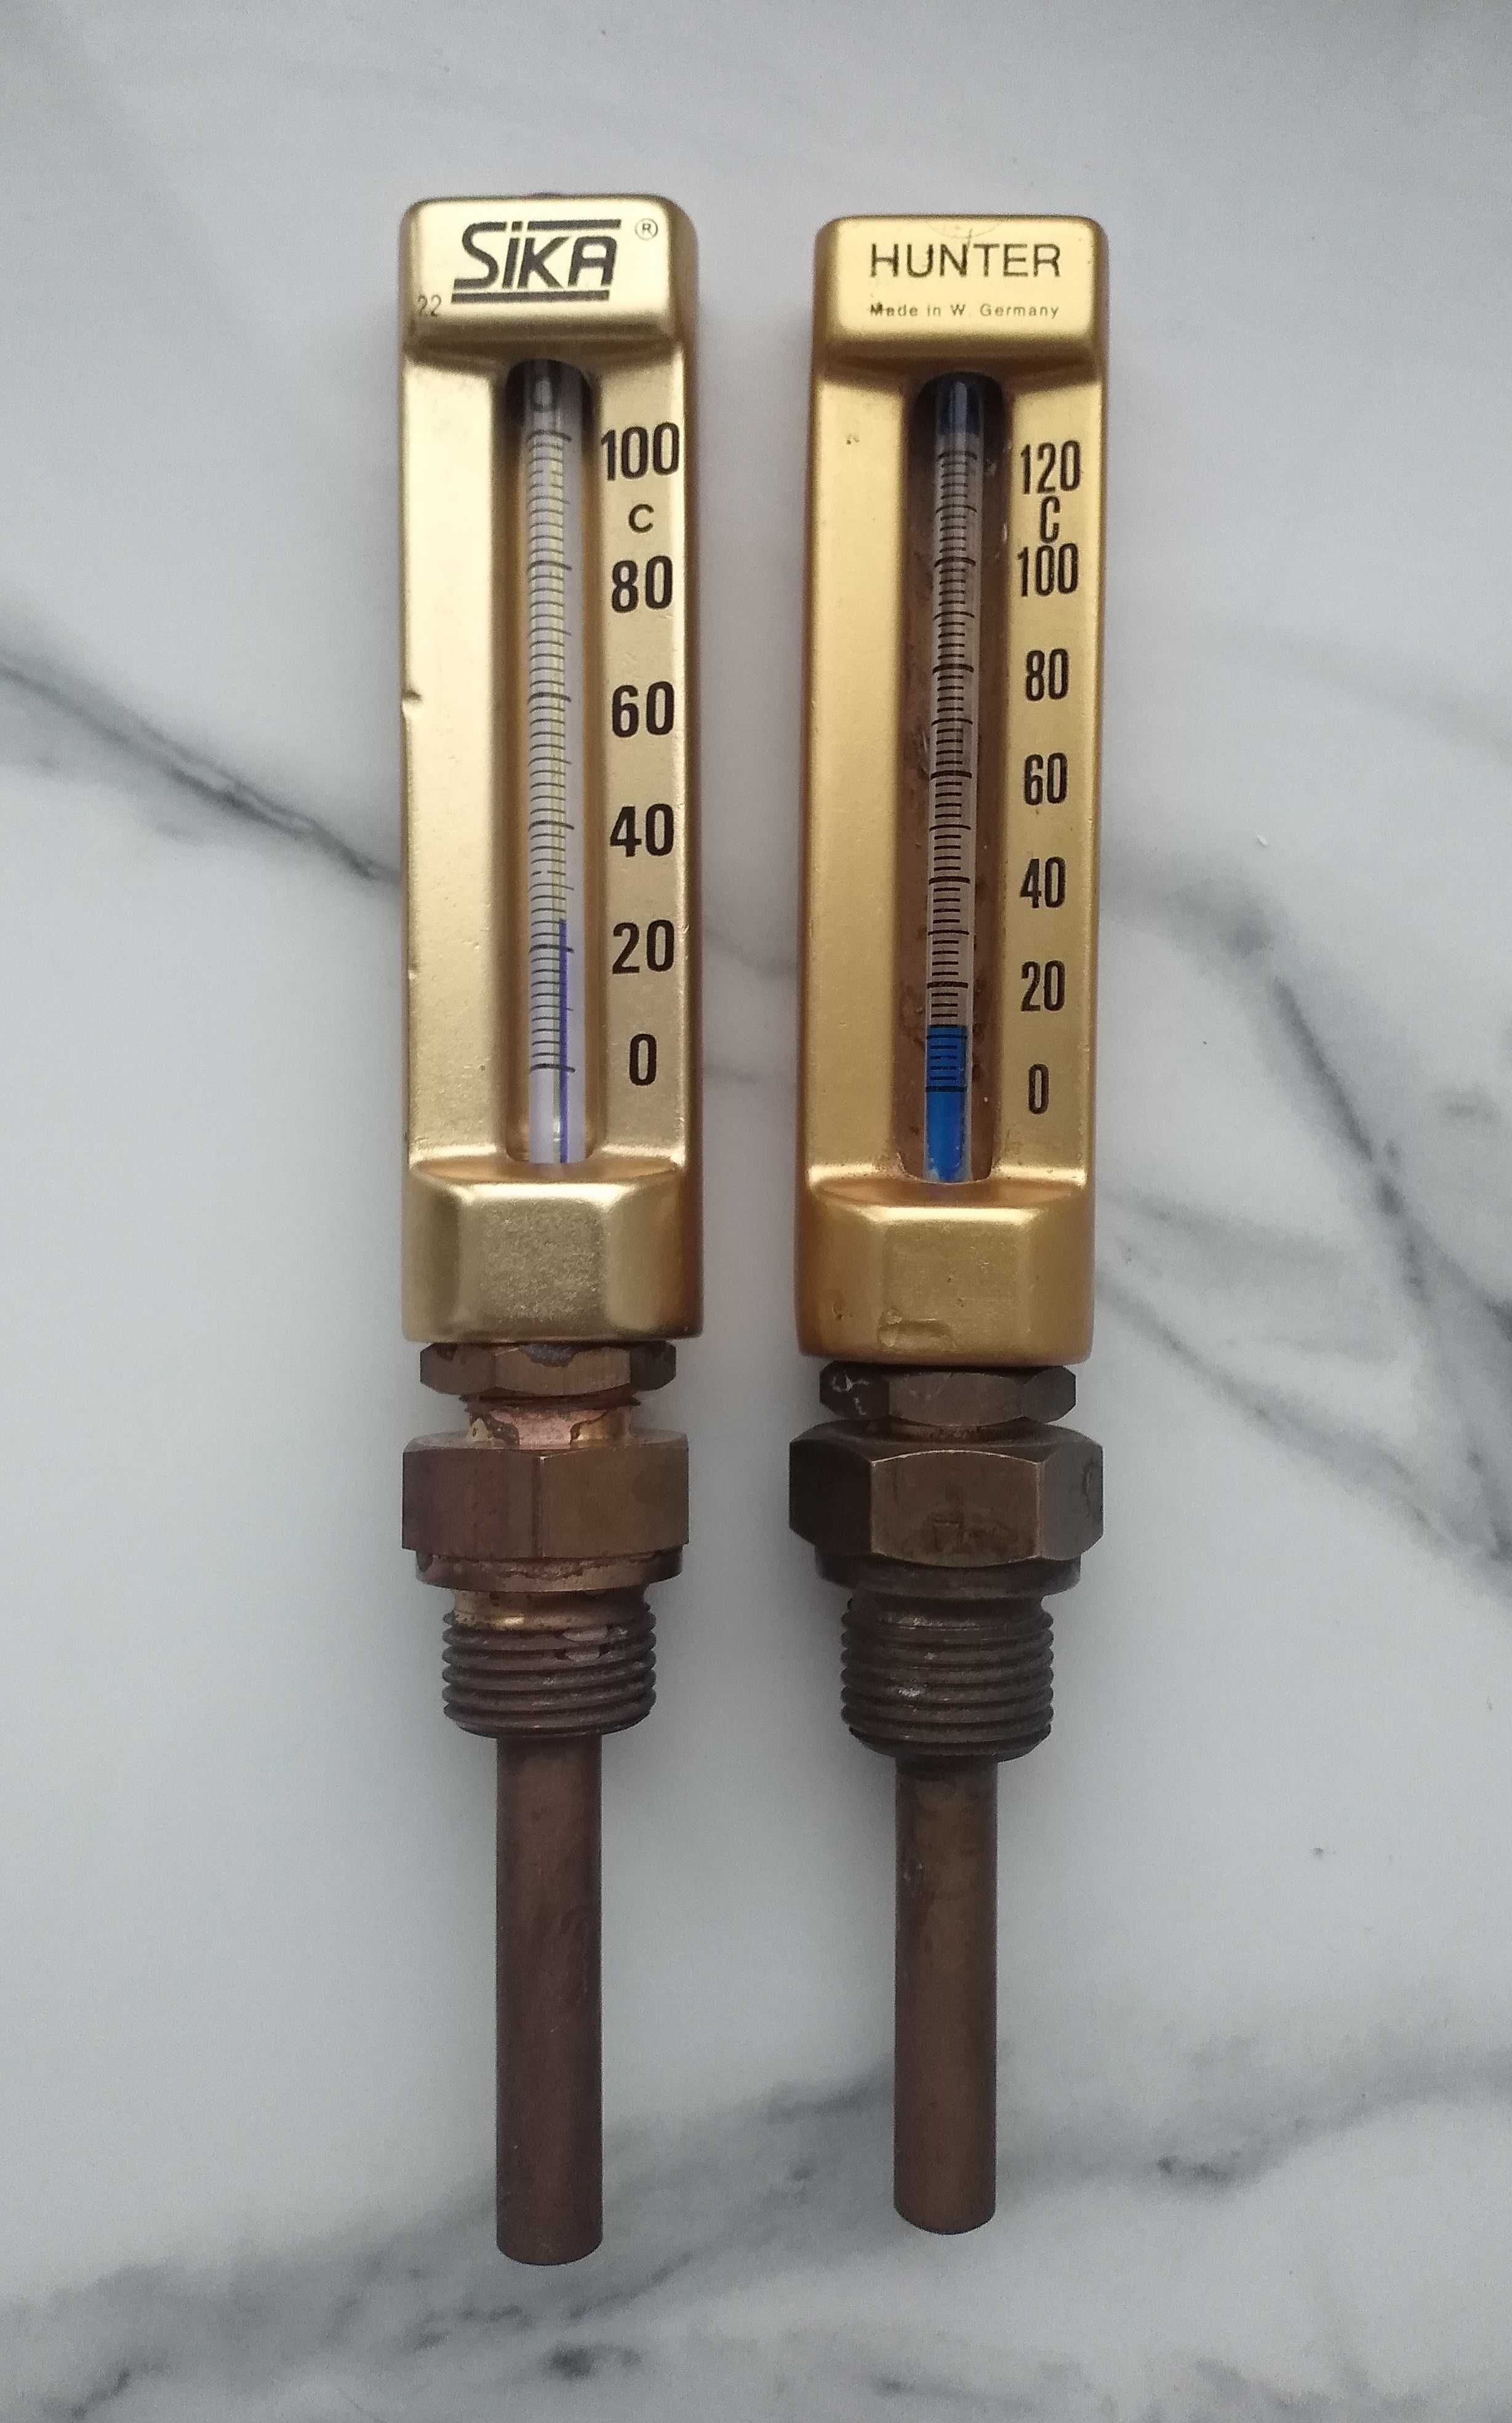 Термометр SIKA или HUNTER Германия для котлов и т.д. жидкостей и паров